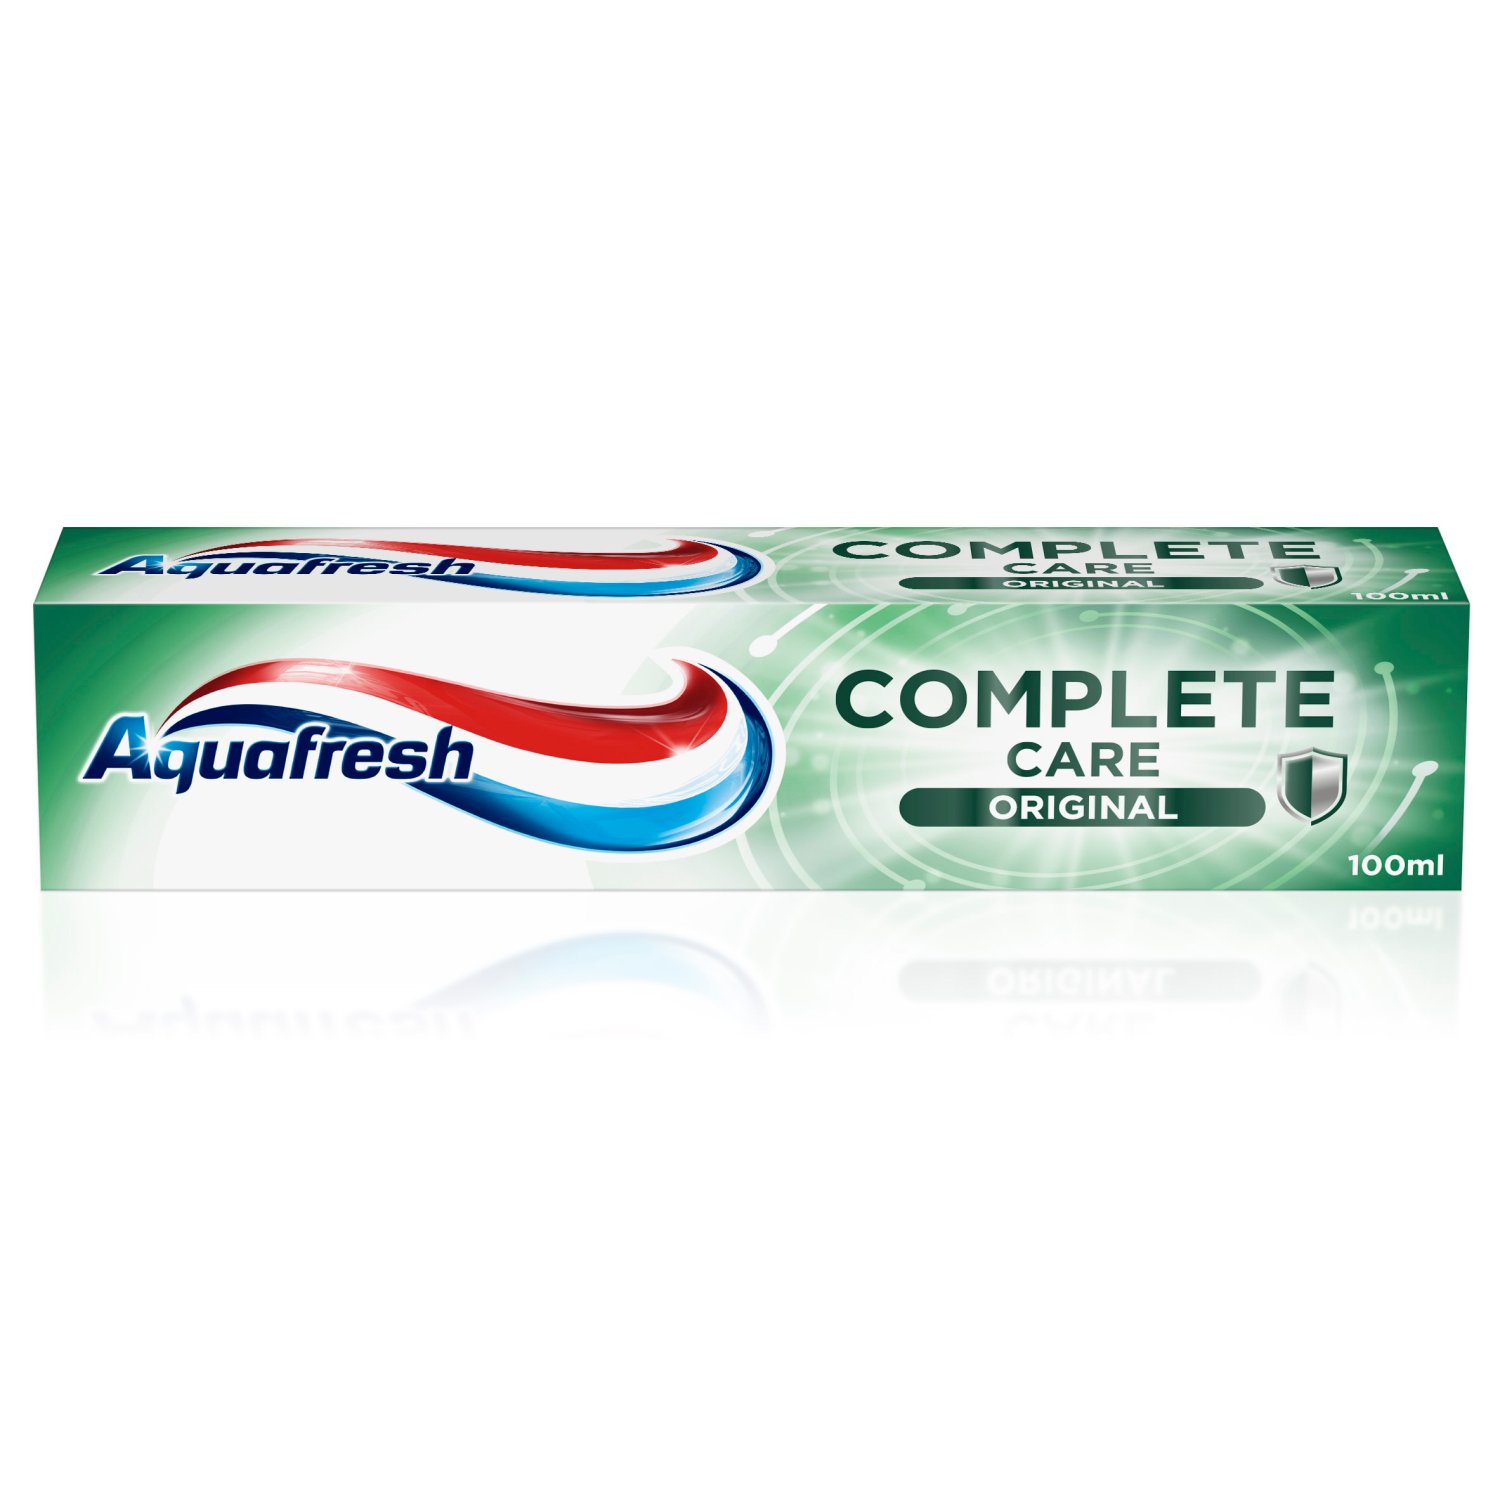 Aquafresh Original Toothpaste (100 ml)